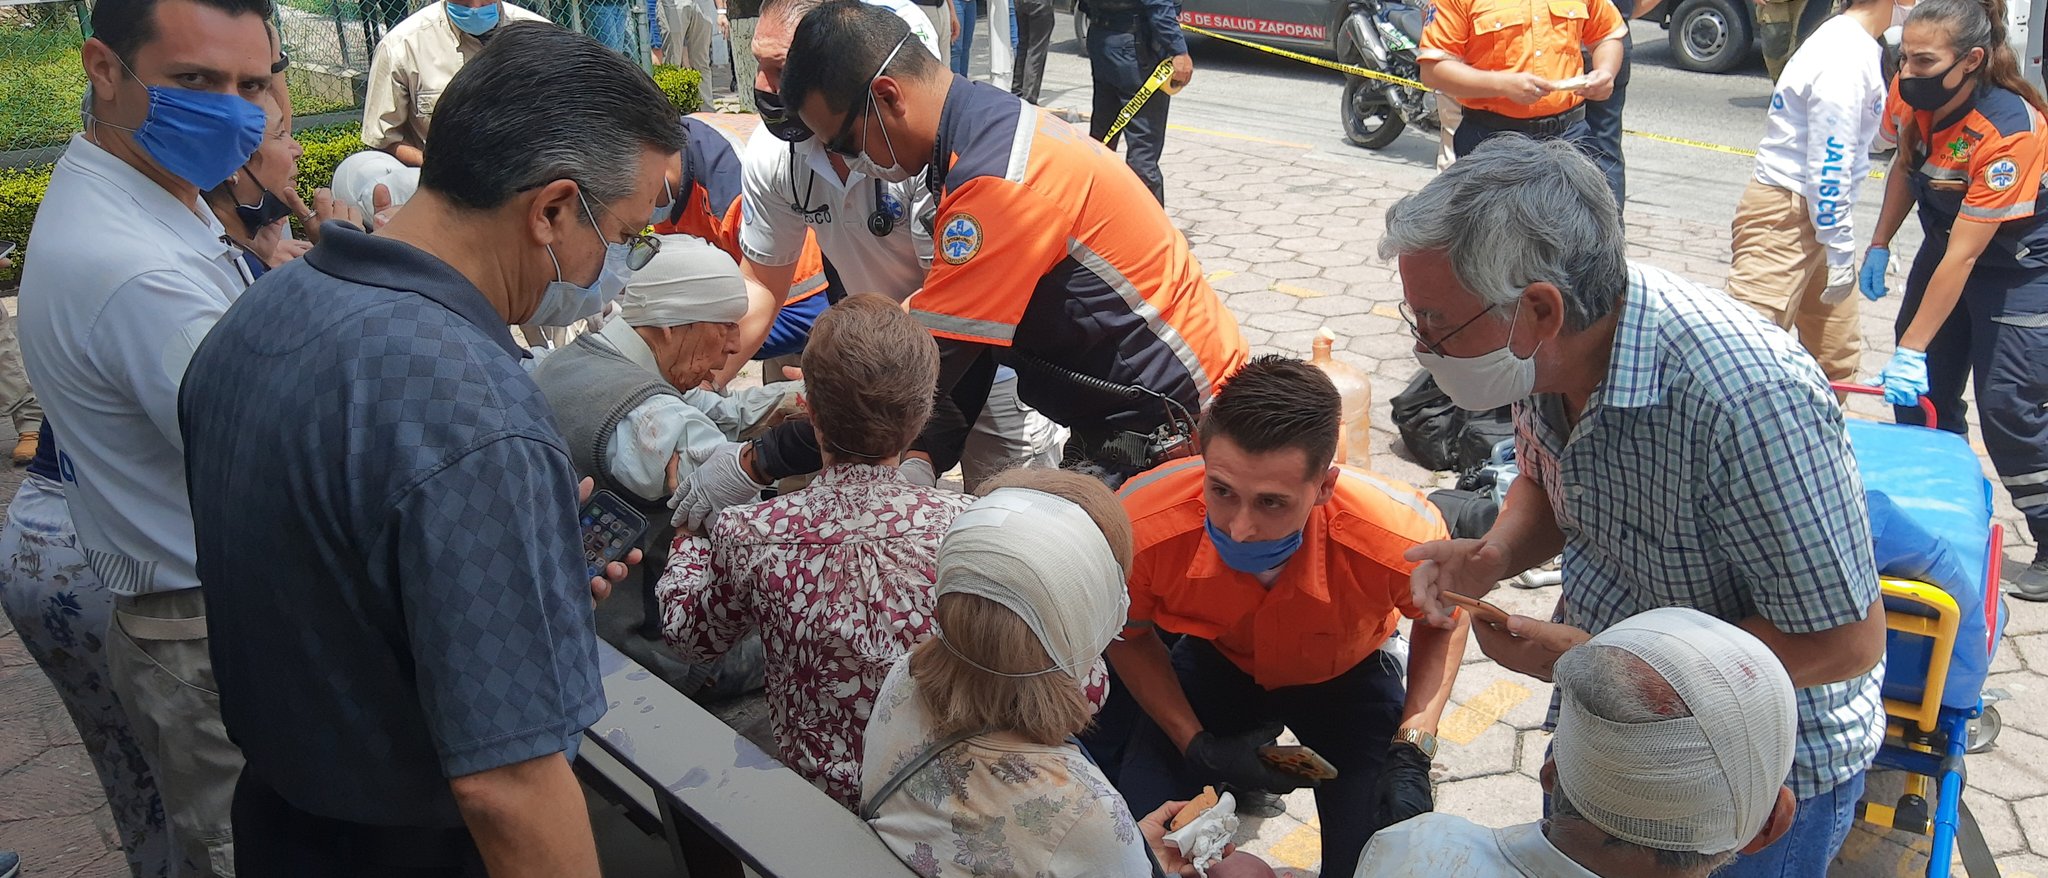 Reportan 11 personas heridas por desplome de techo en parroquia de Zapopan